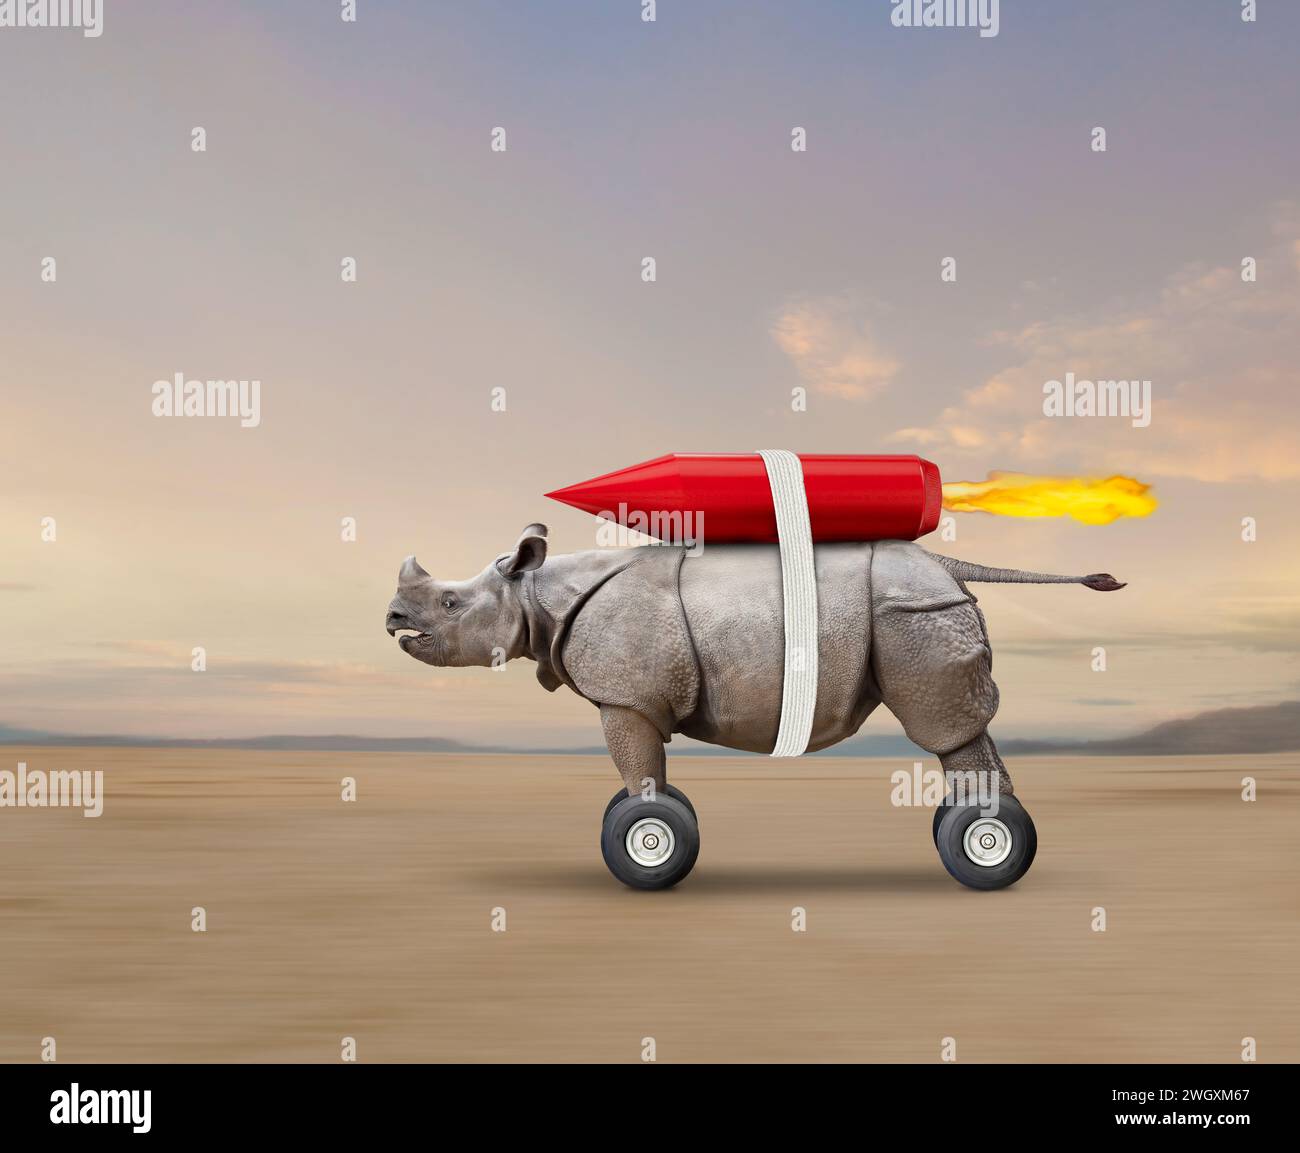 Un drôle de rhinocéros roule à travers la plaine, sur roues, propulsé par une fusée accrochée à son dos dans une image sur la vitesse, l'innovation et la technologie. Banque D'Images